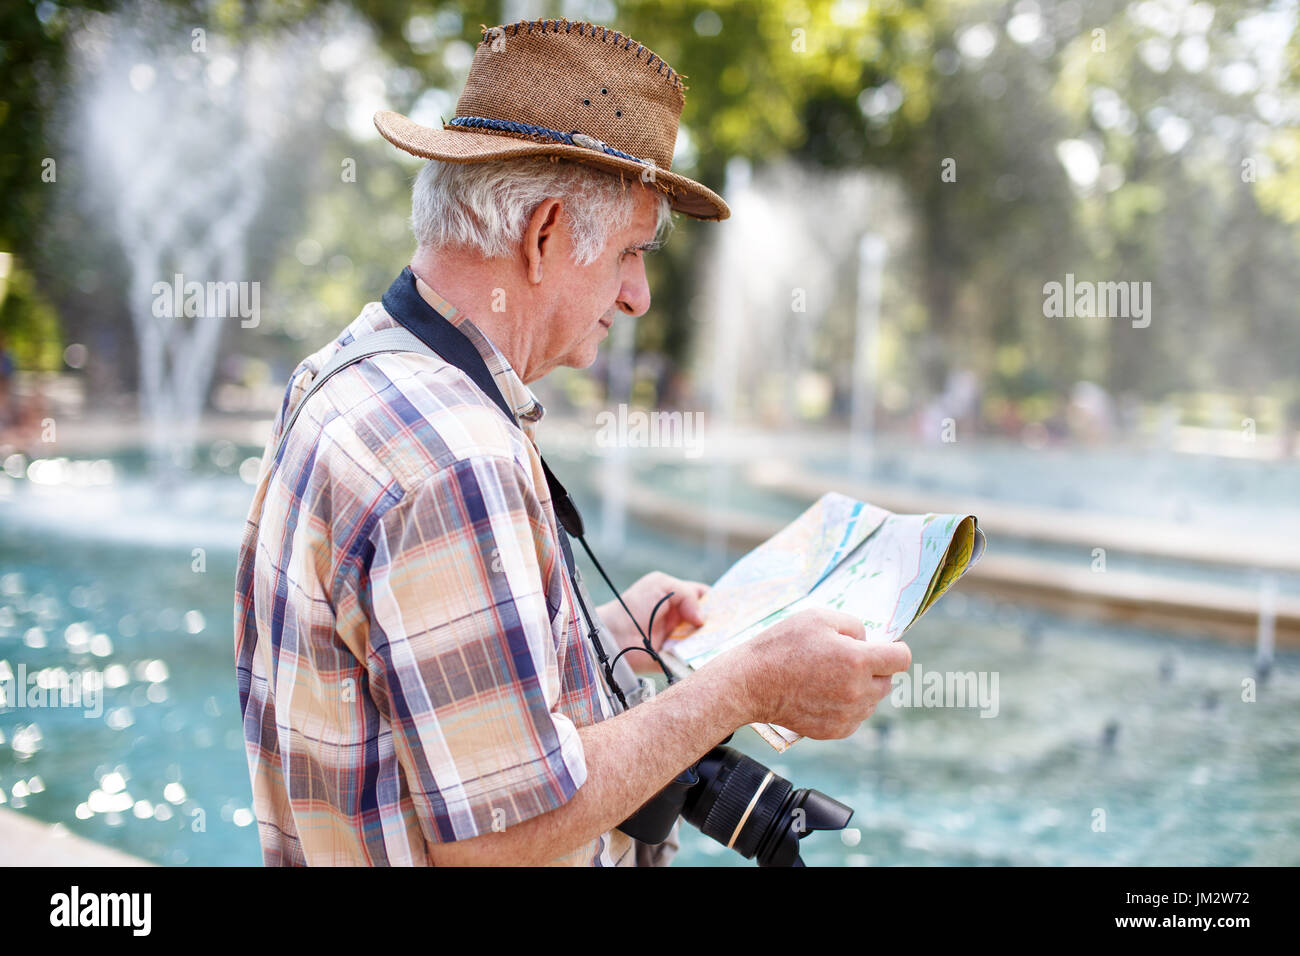 Titolare di pensione o di rendita turistico in hat ricerca per la destinazione sulla mappa nel parco con fontane Foto Stock